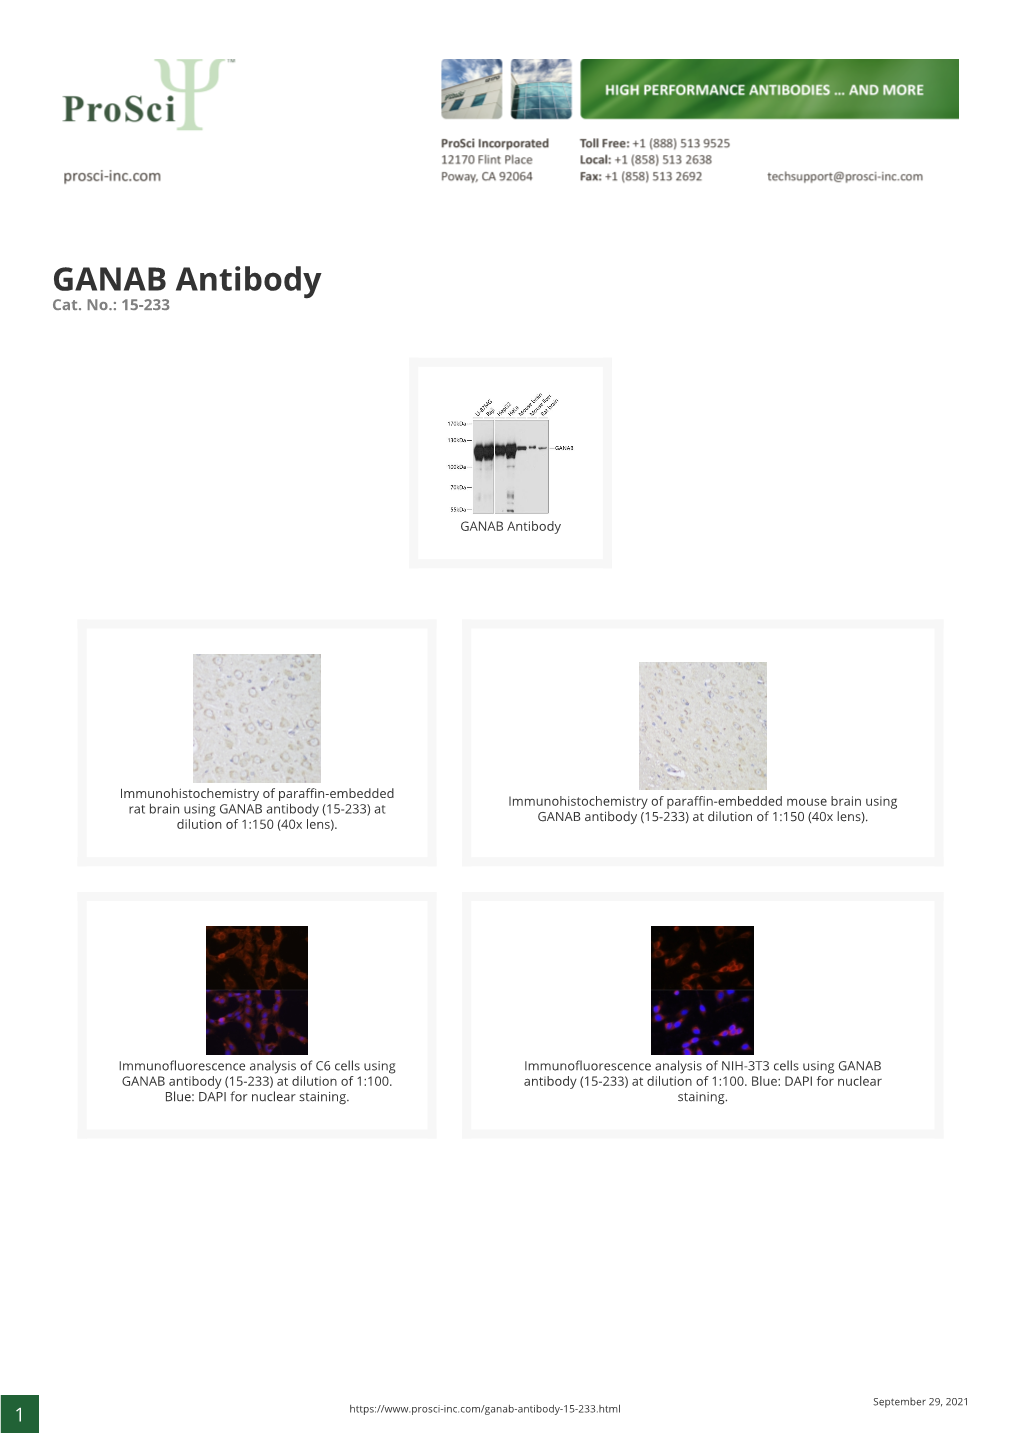 GANAB Antibody Cat